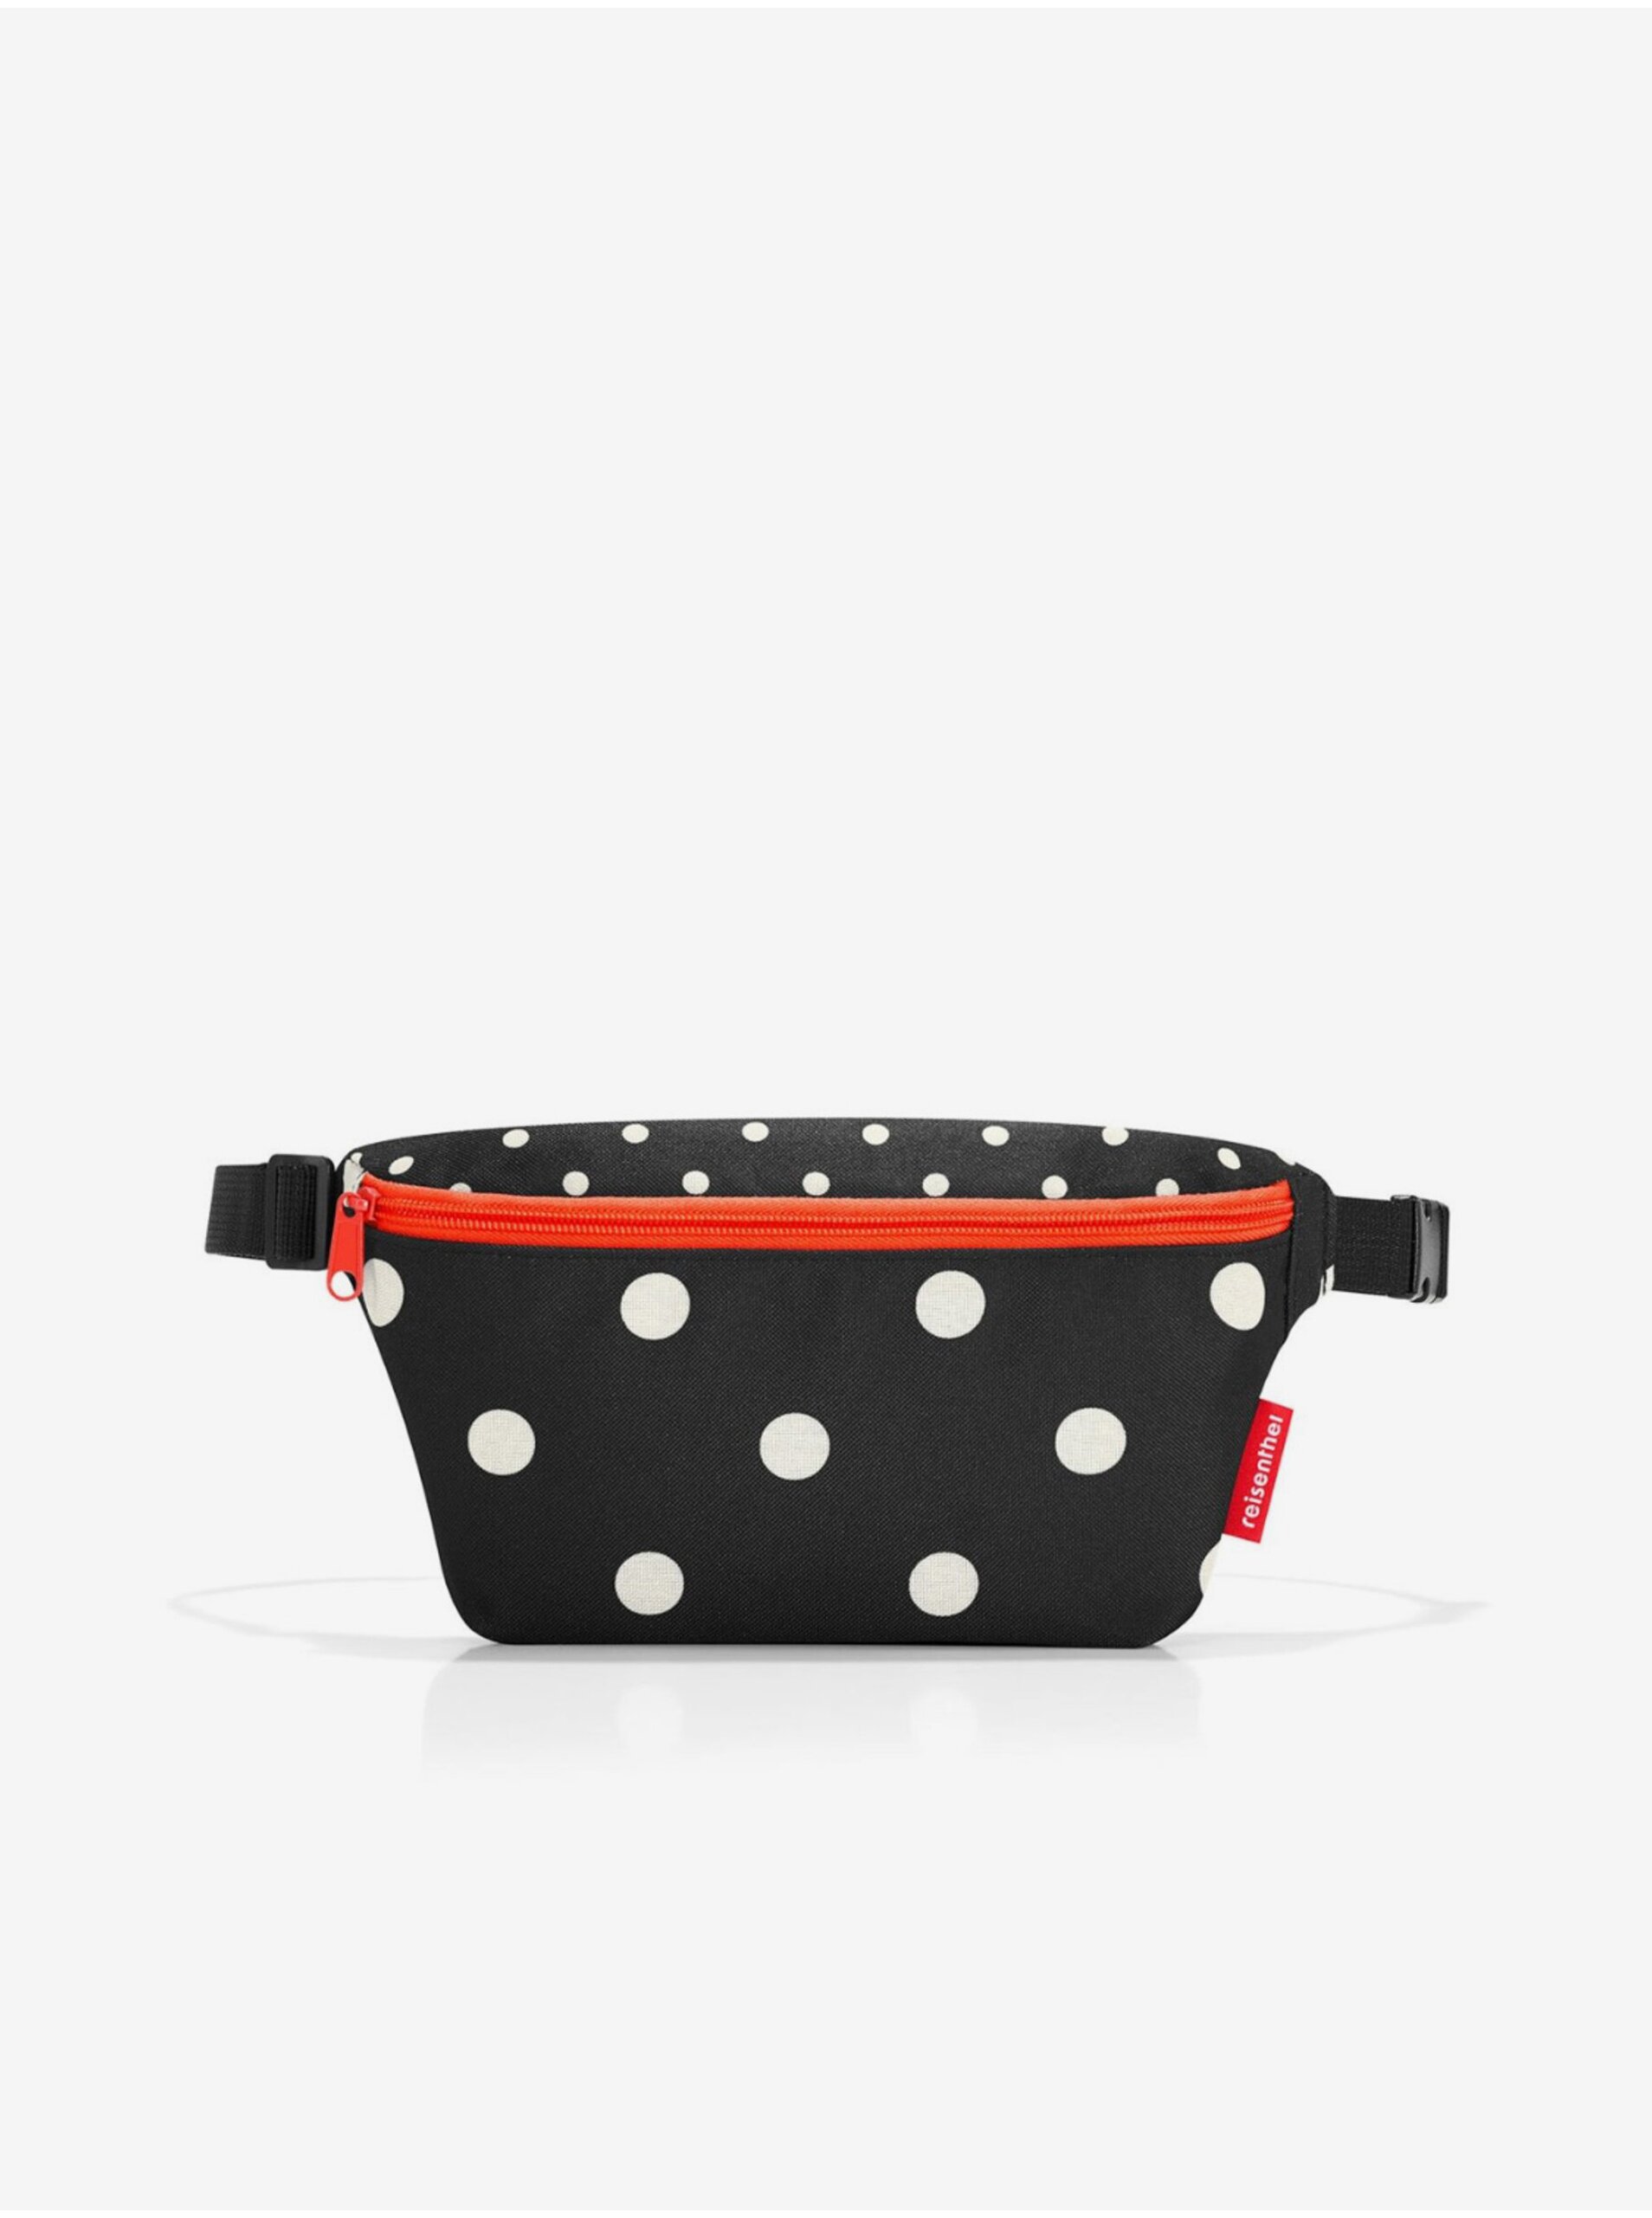 E-shop Červeno-černá dámská puntíkovaná ledvinka Reisenthel Beltbag S Mixed Dots